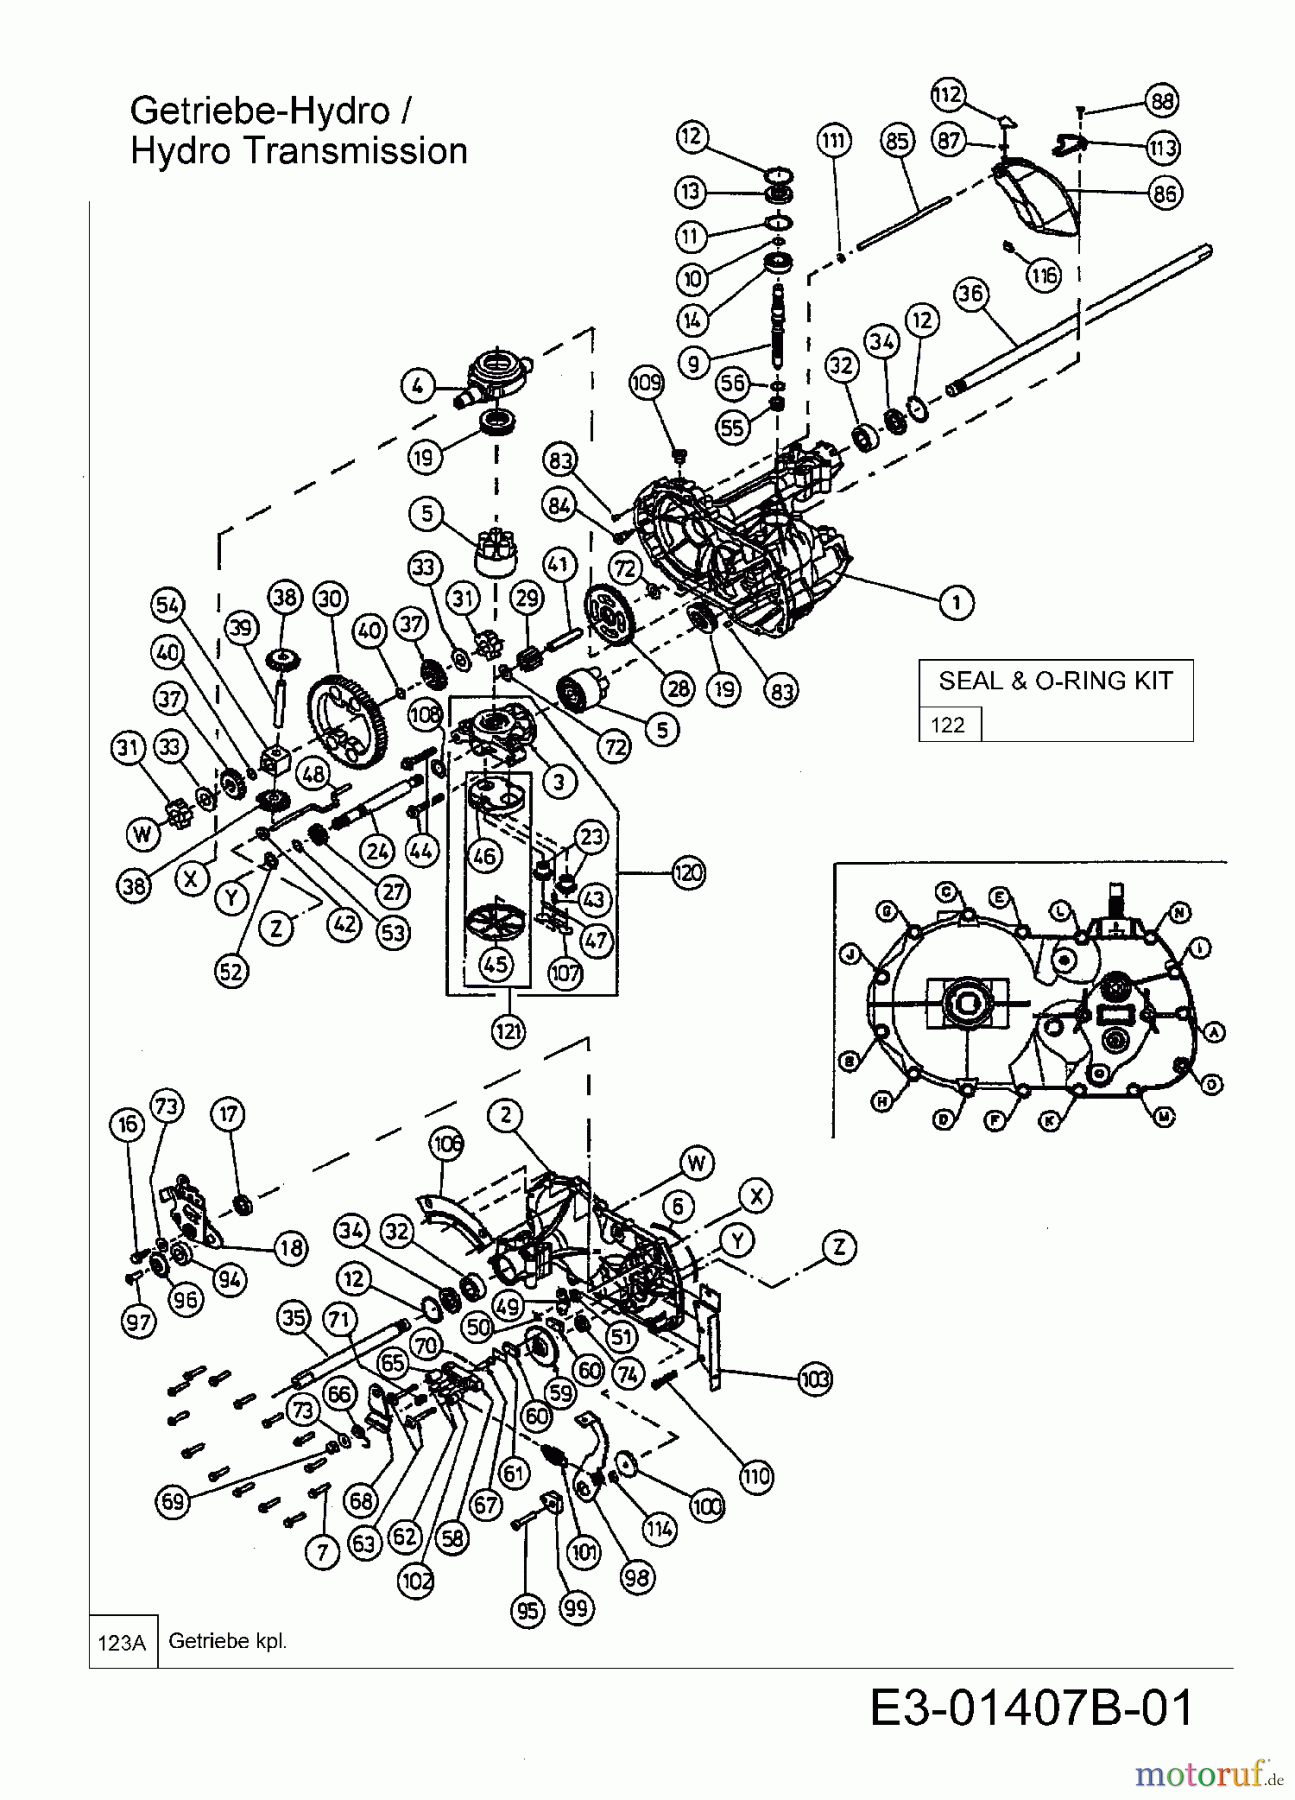  Yard-Man Lawn tractors HN 5200 13BT514N643  (2003) Hydrostatic gearbox